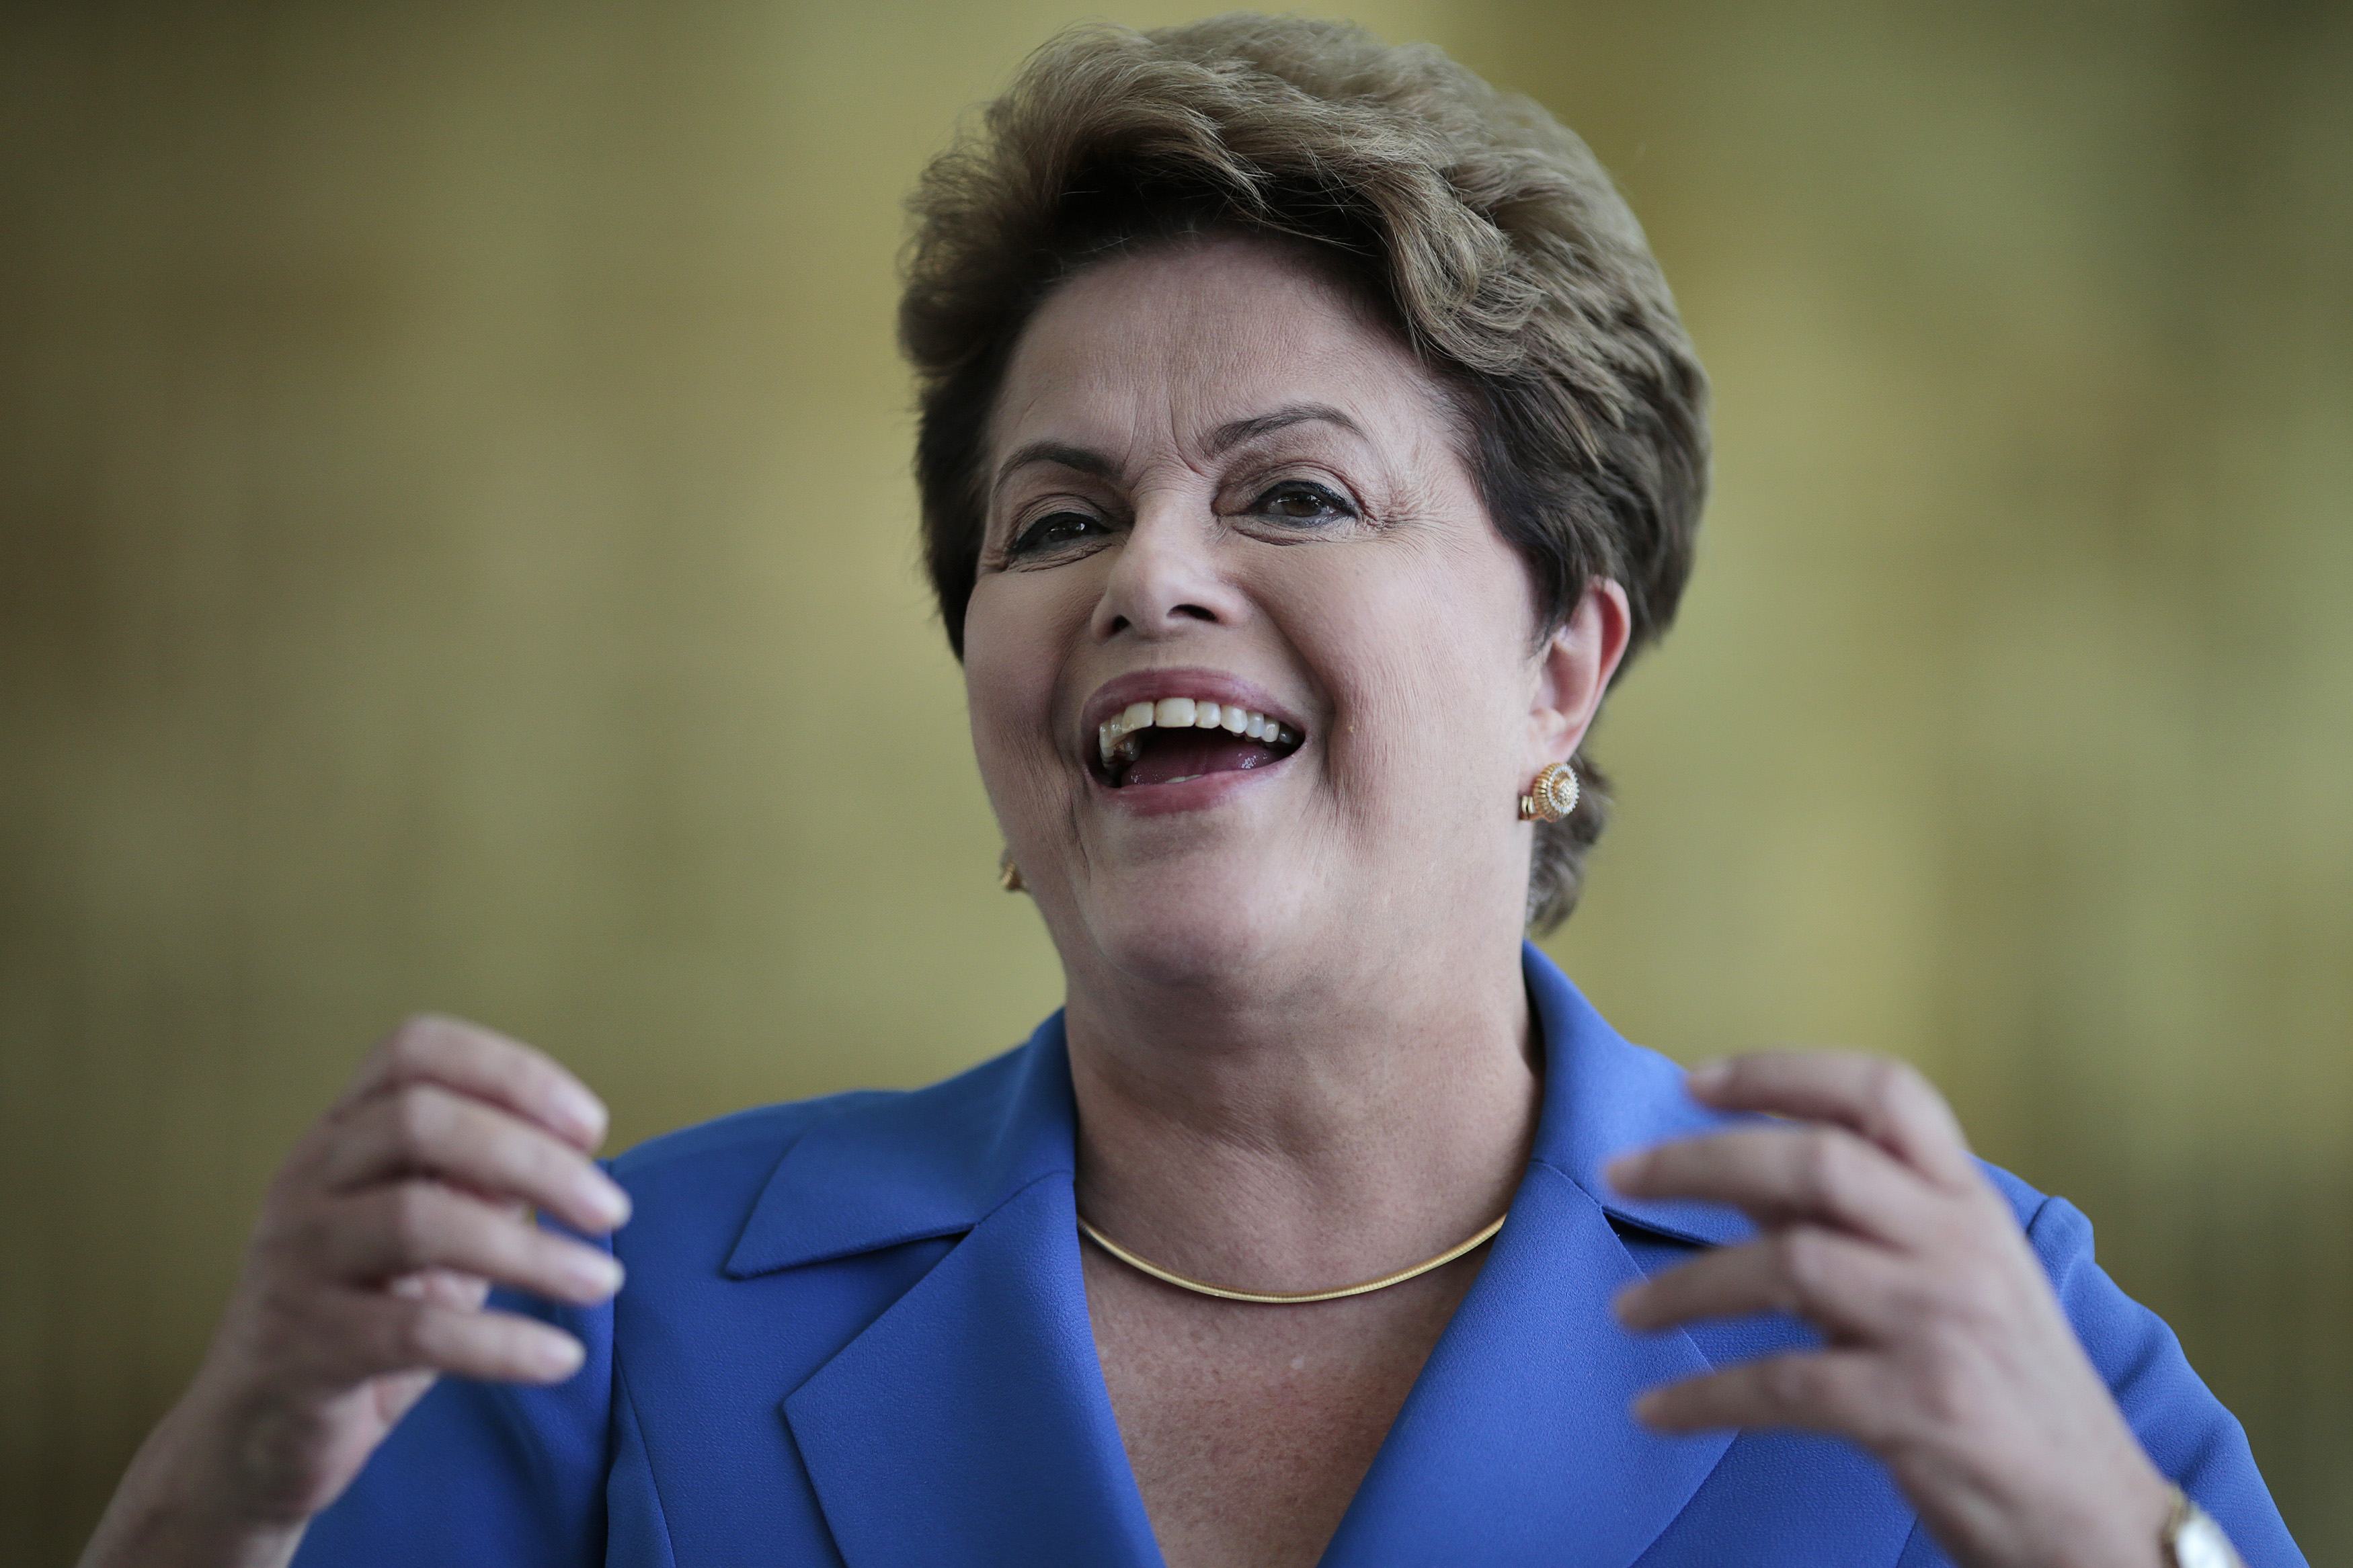 Tras el acuerdo entre Neves y Silva, Dilma Rousseff dispara: Representan el retroceso